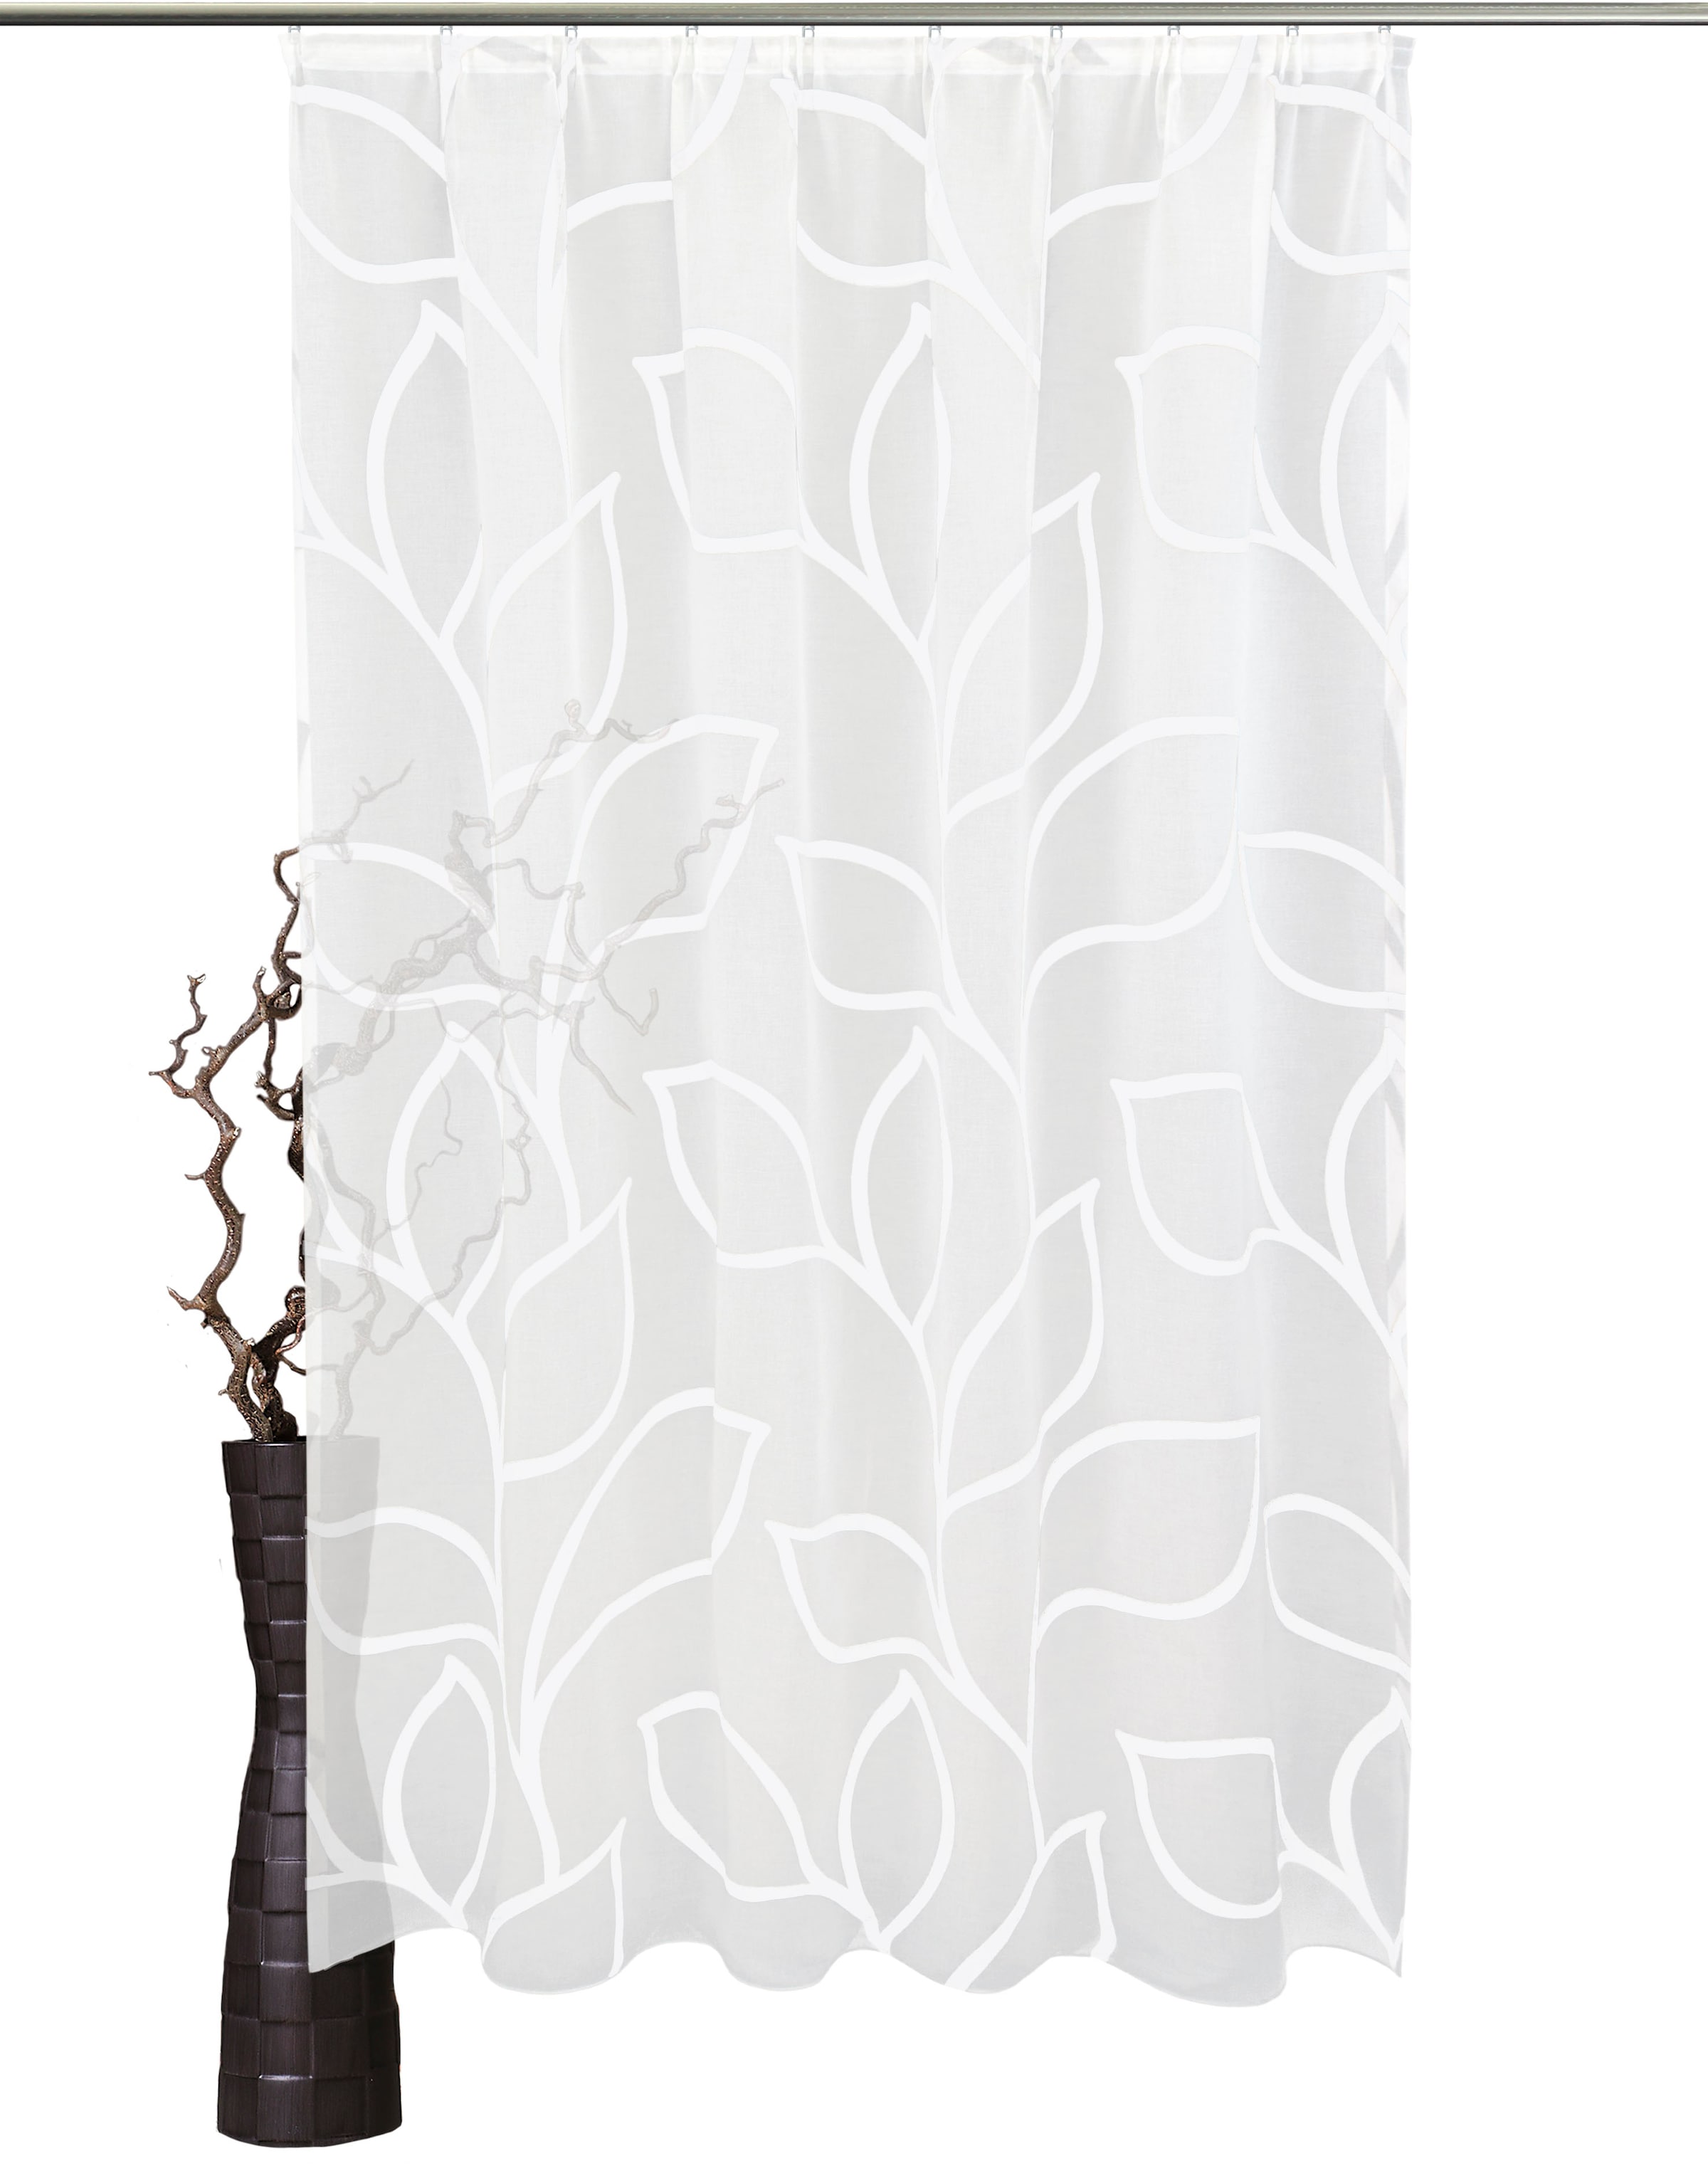 Försäljning Undra föregångare gardinen 165 hoch cm Kvinna Övertalning rycka